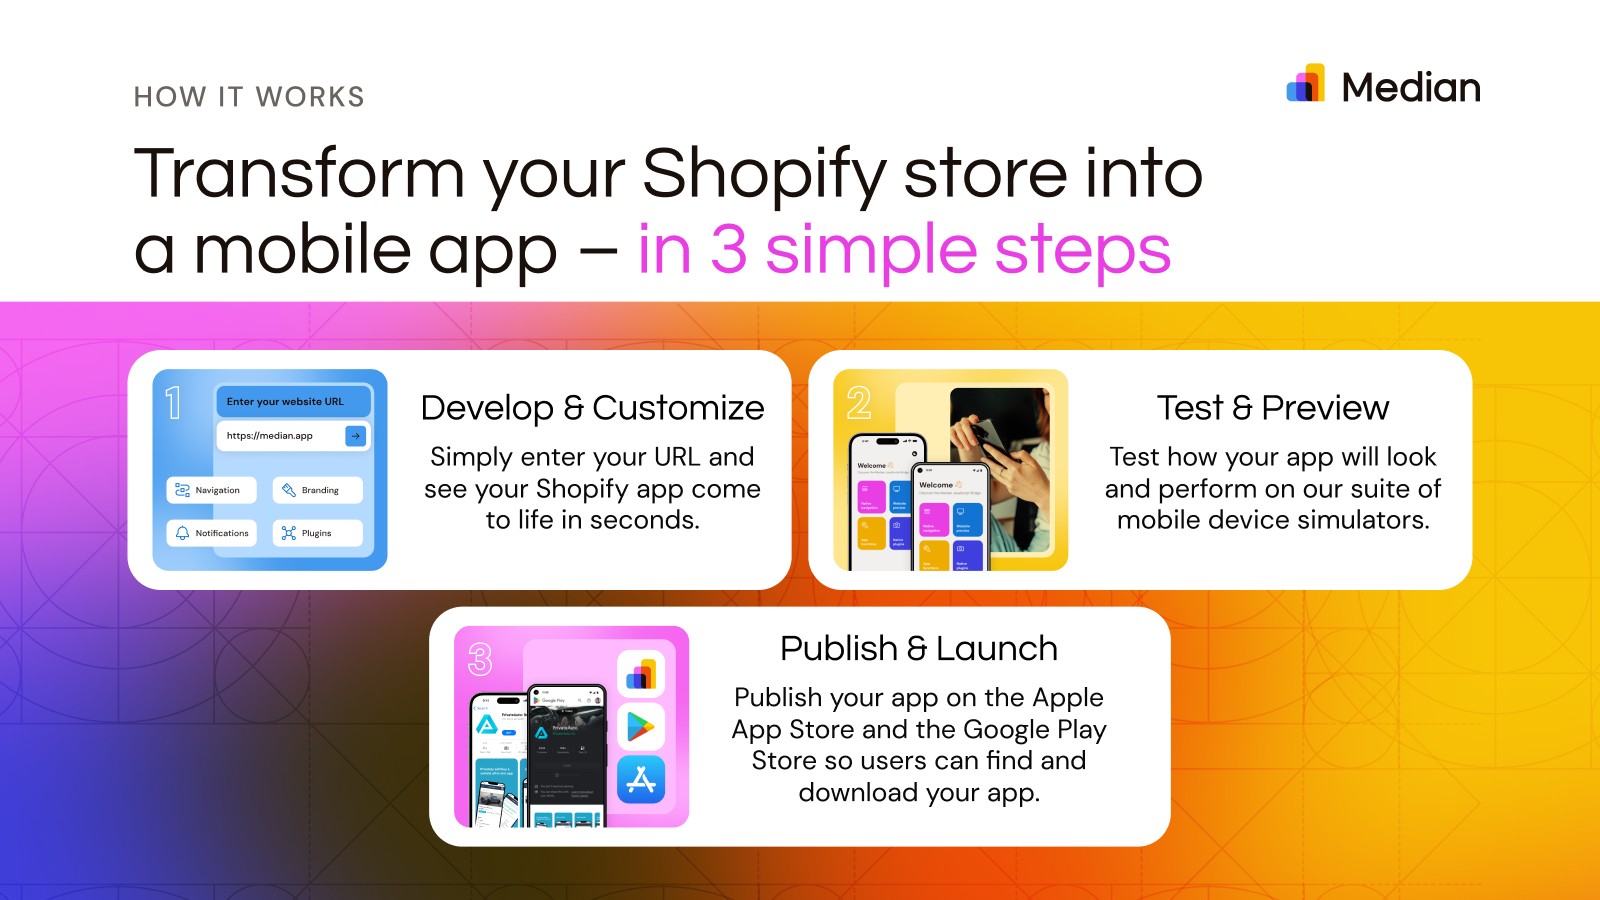 Transformez votre boutique Shopify en une application mobile en 3 étapes simples